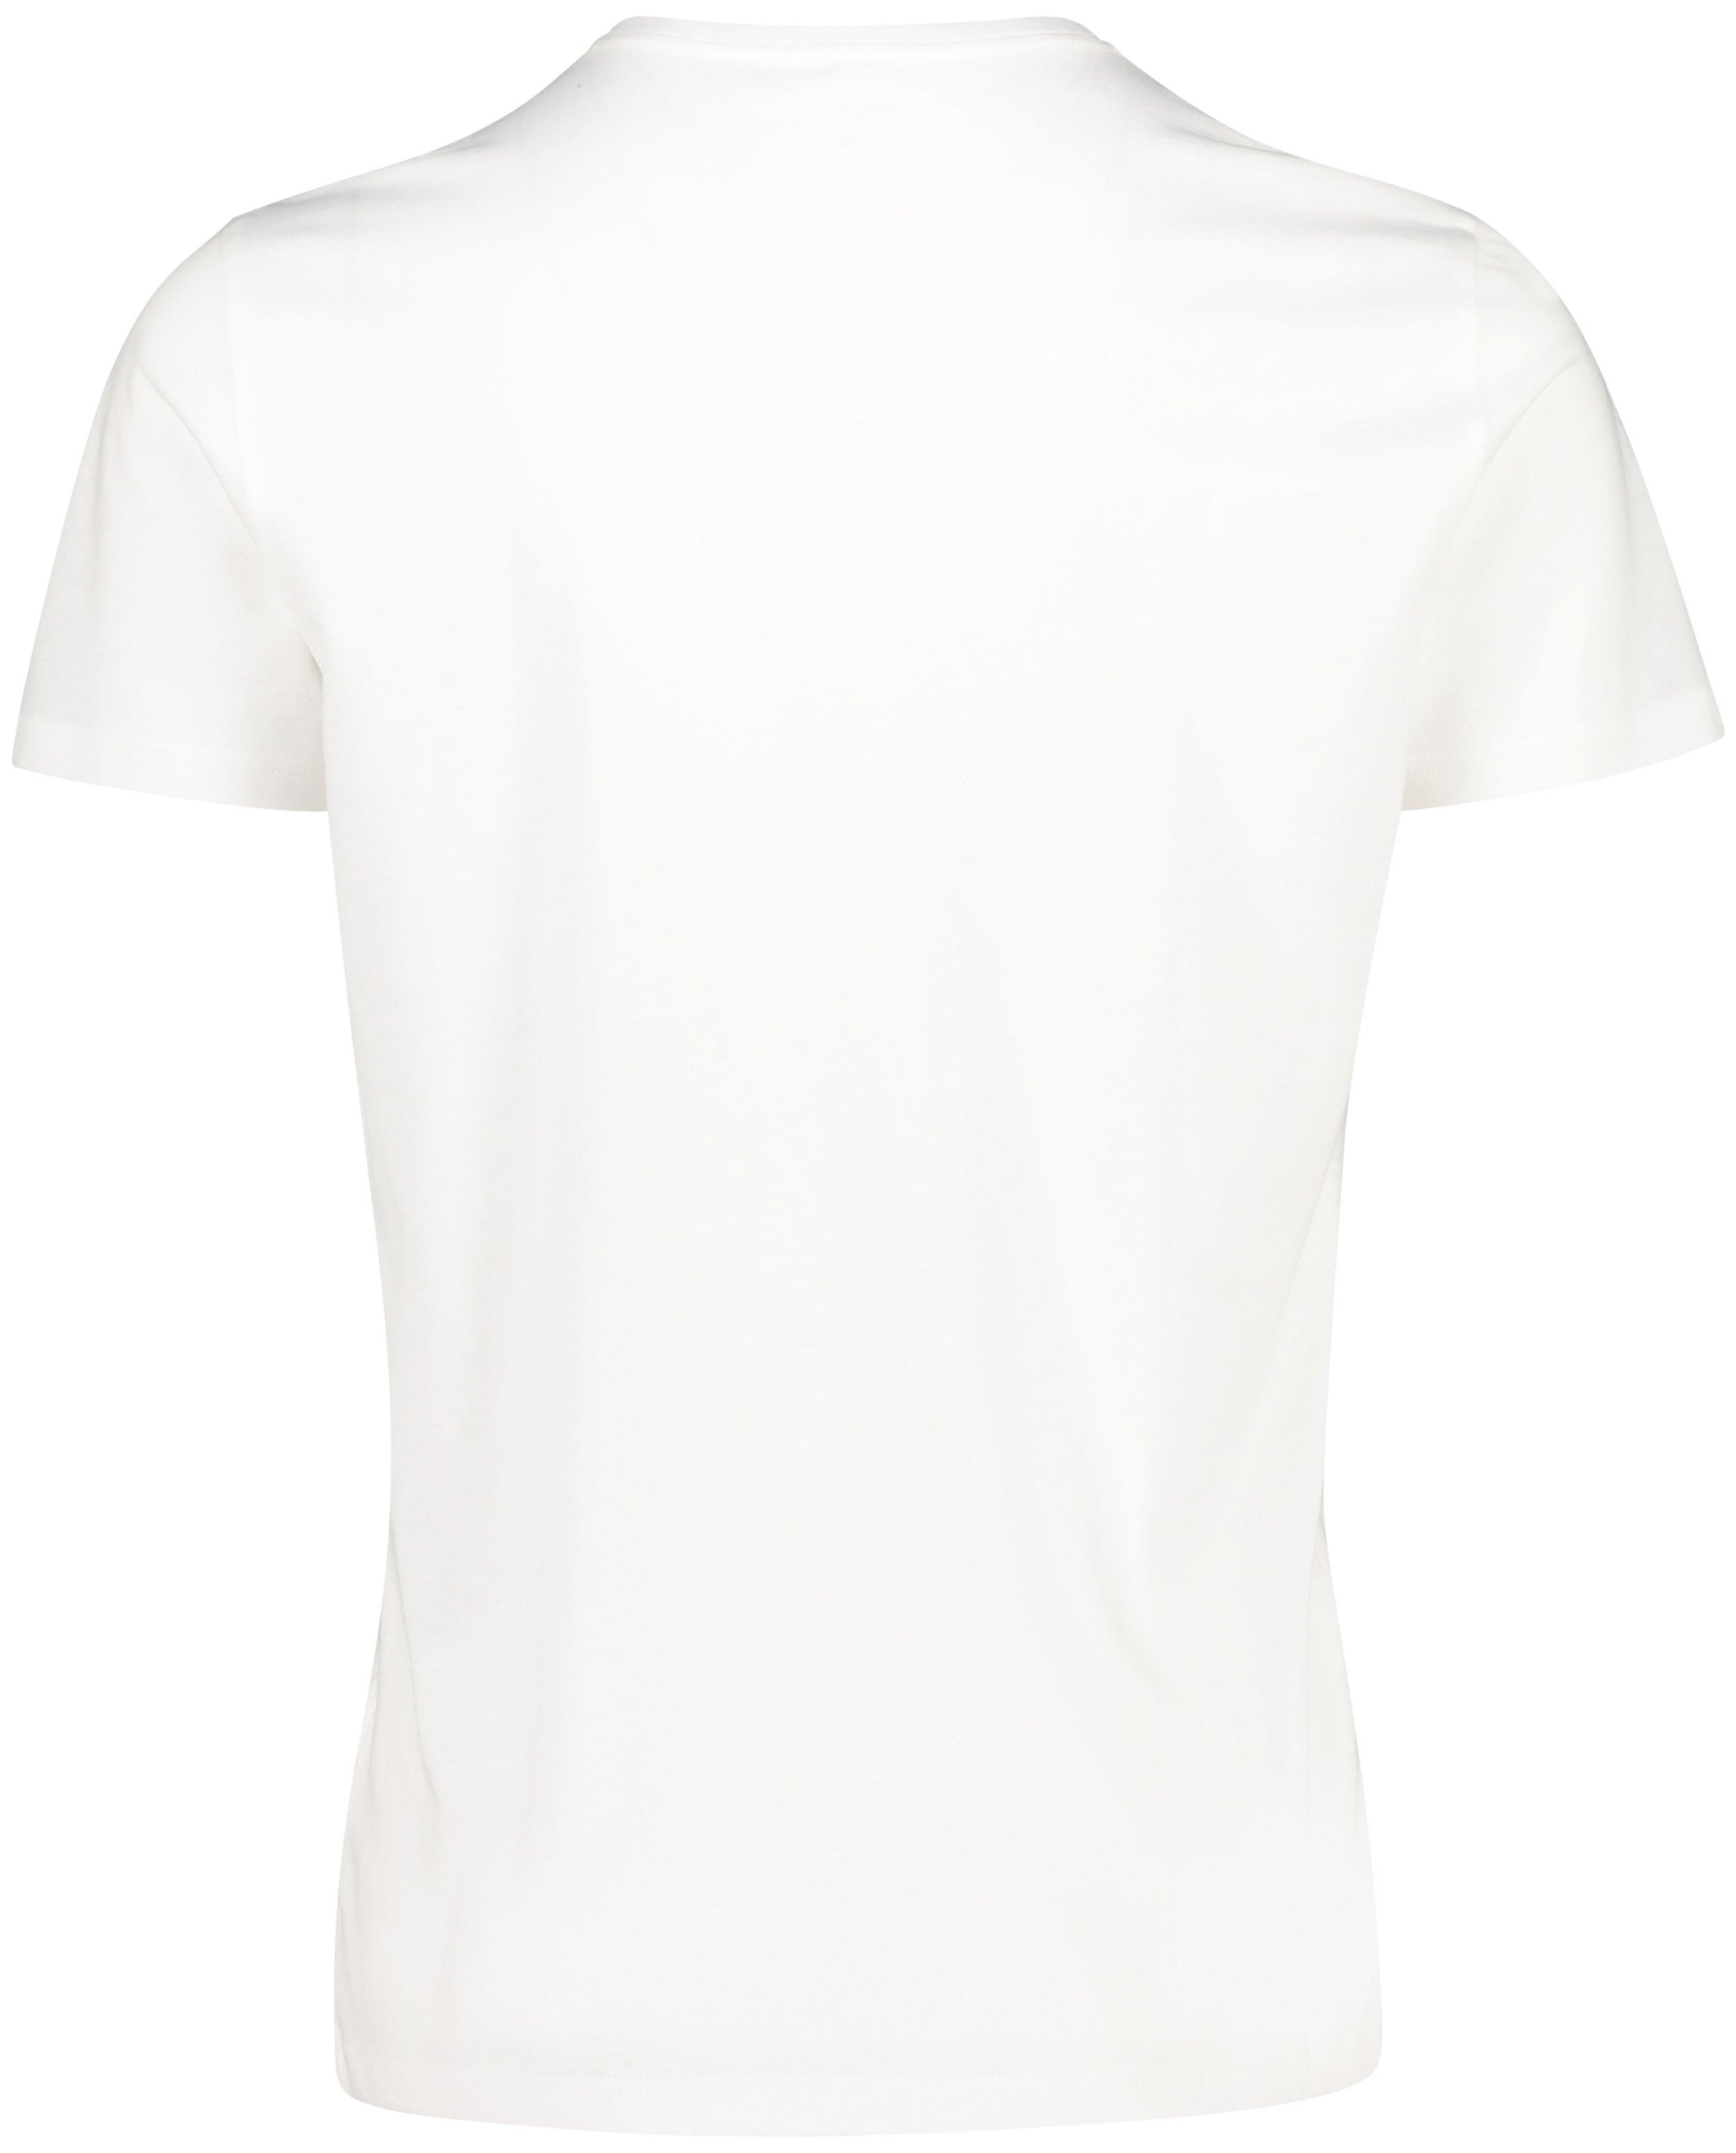 T-shirts - Biokatoenen T-shirt